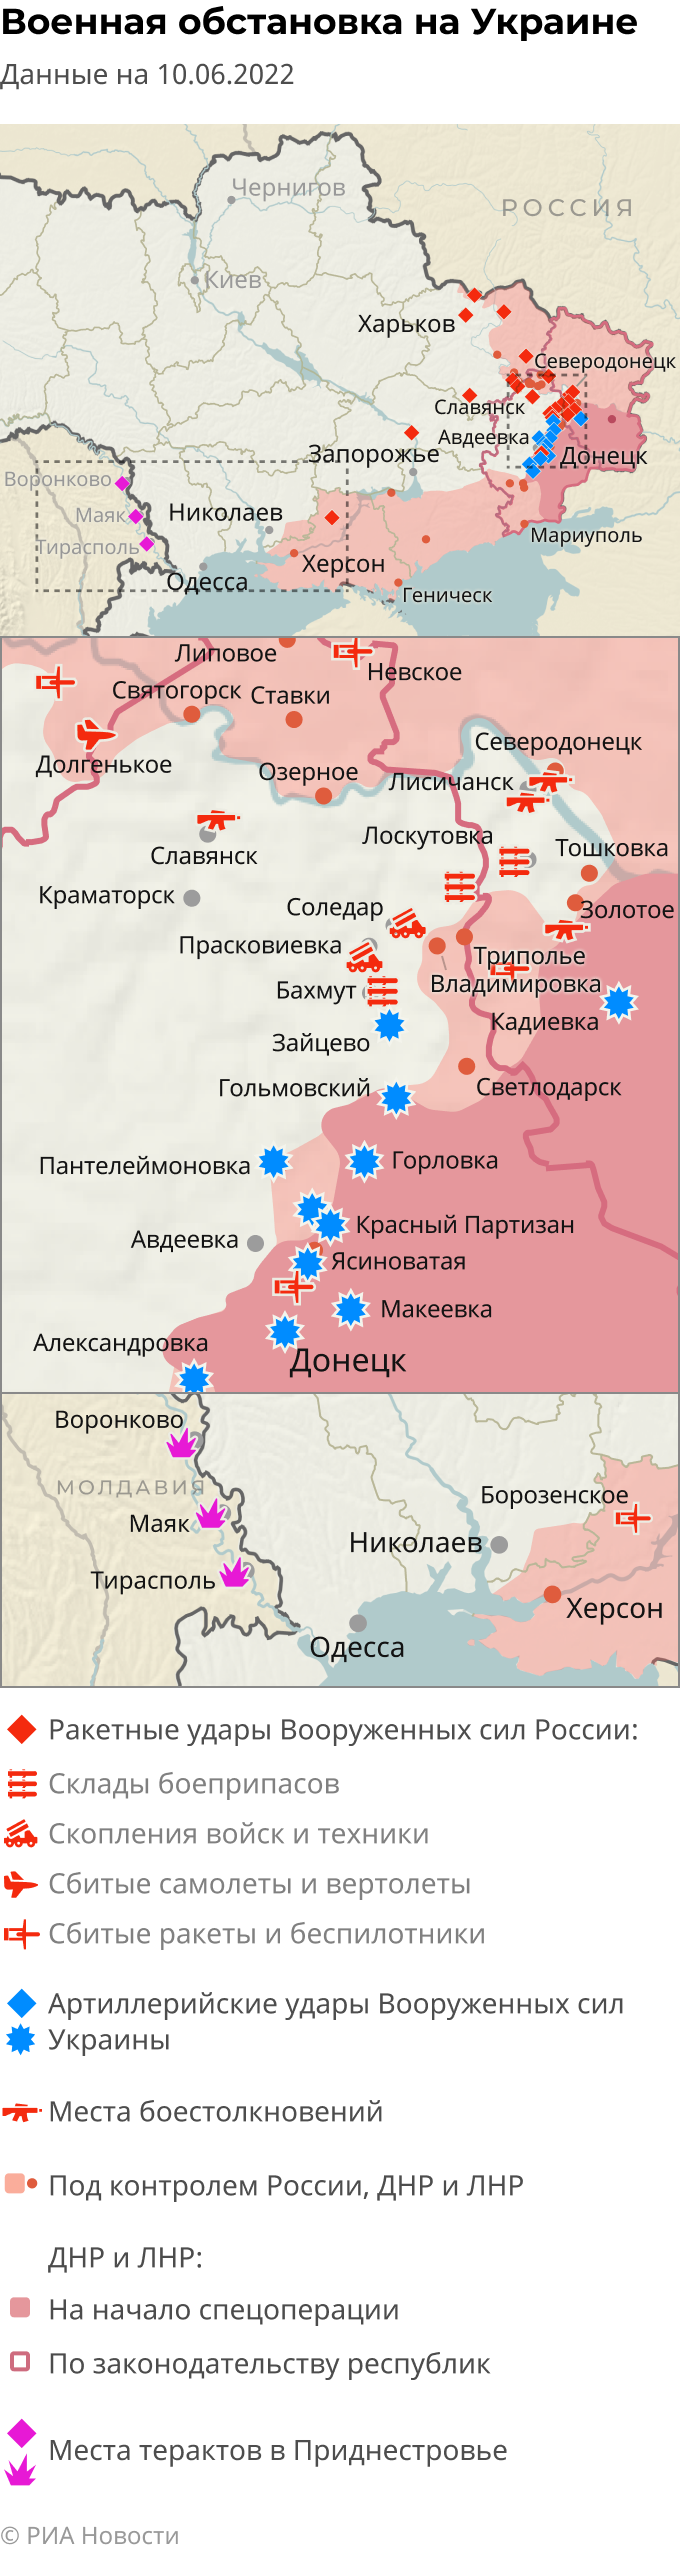 Карта боевых действий на украине на сегодня онлайн подробная